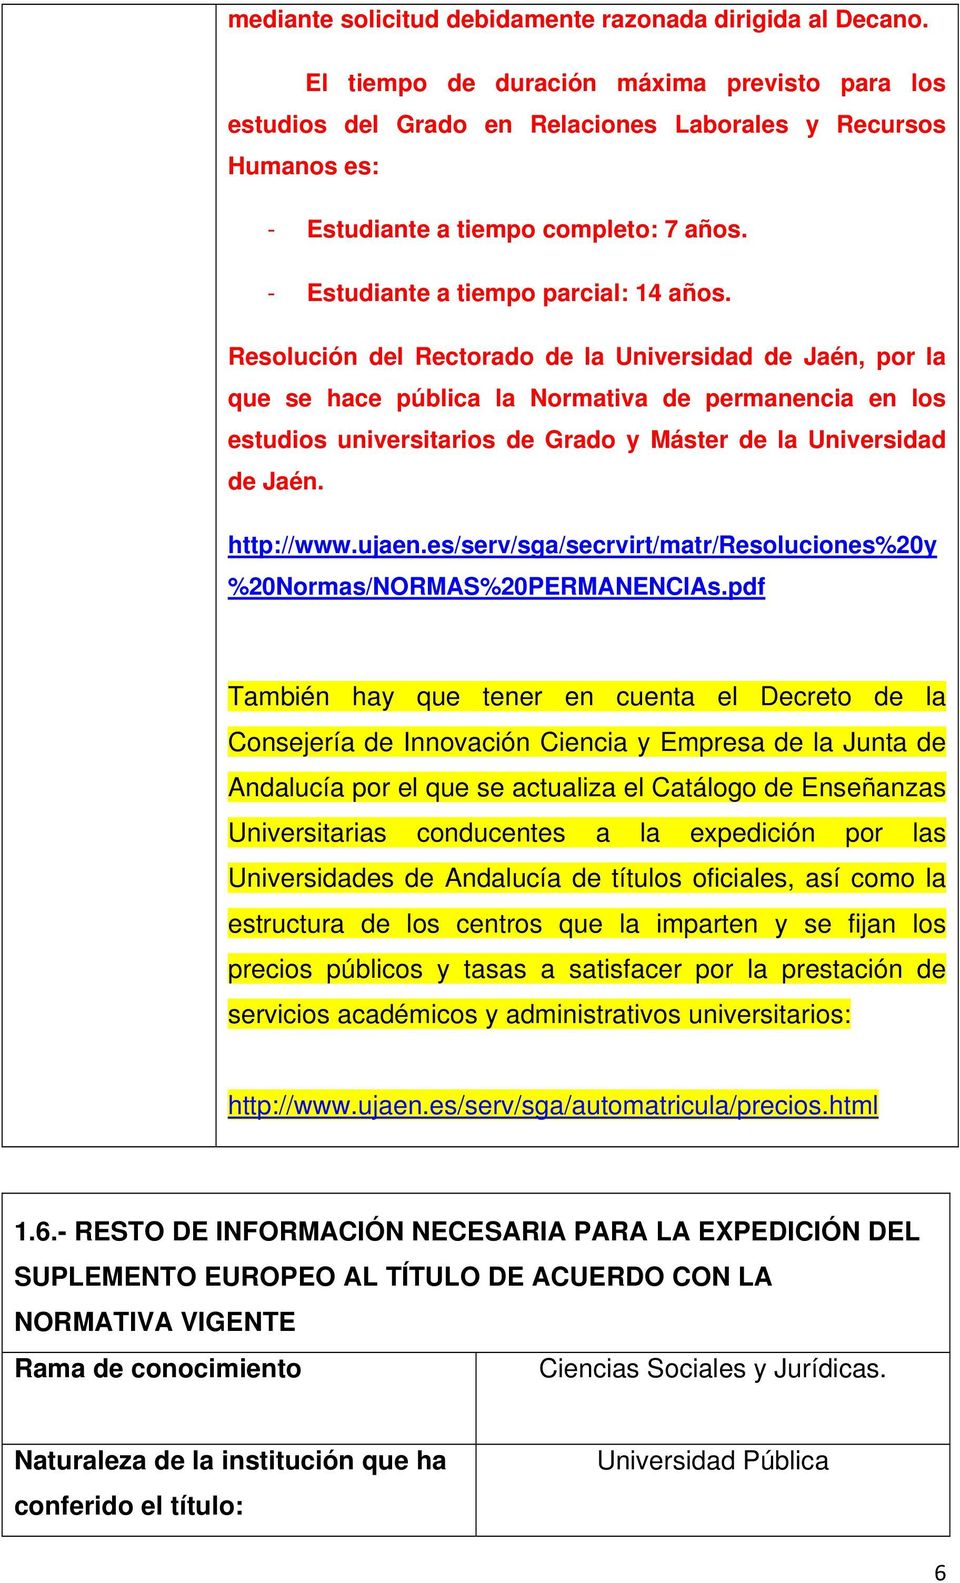 Resolución del Rectorado de la Universidad de Jaén, por la que se hace pública la Normativa de permanencia en los estudios universitarios de Grado y Máster de la Universidad de Jaén. http://www.ujaen.